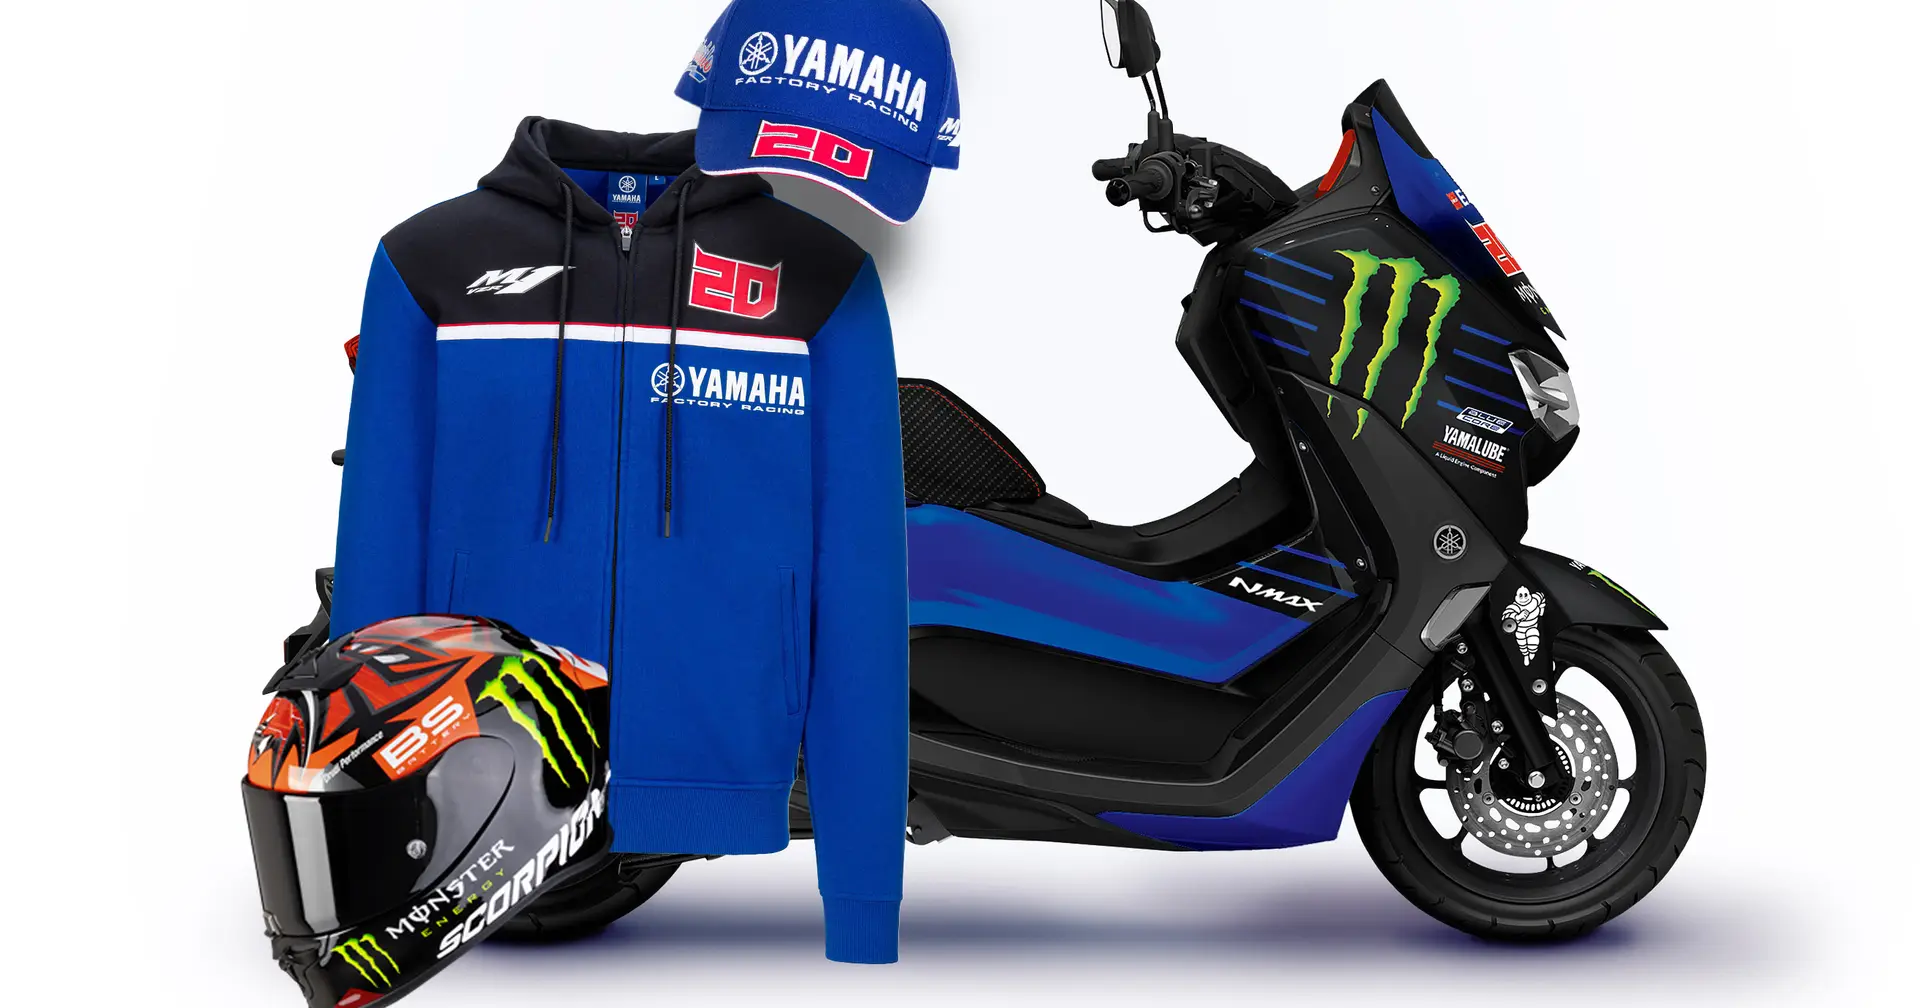 Ganhe uma scooter com o Expresso e a Yamaha: veja aqui como participar